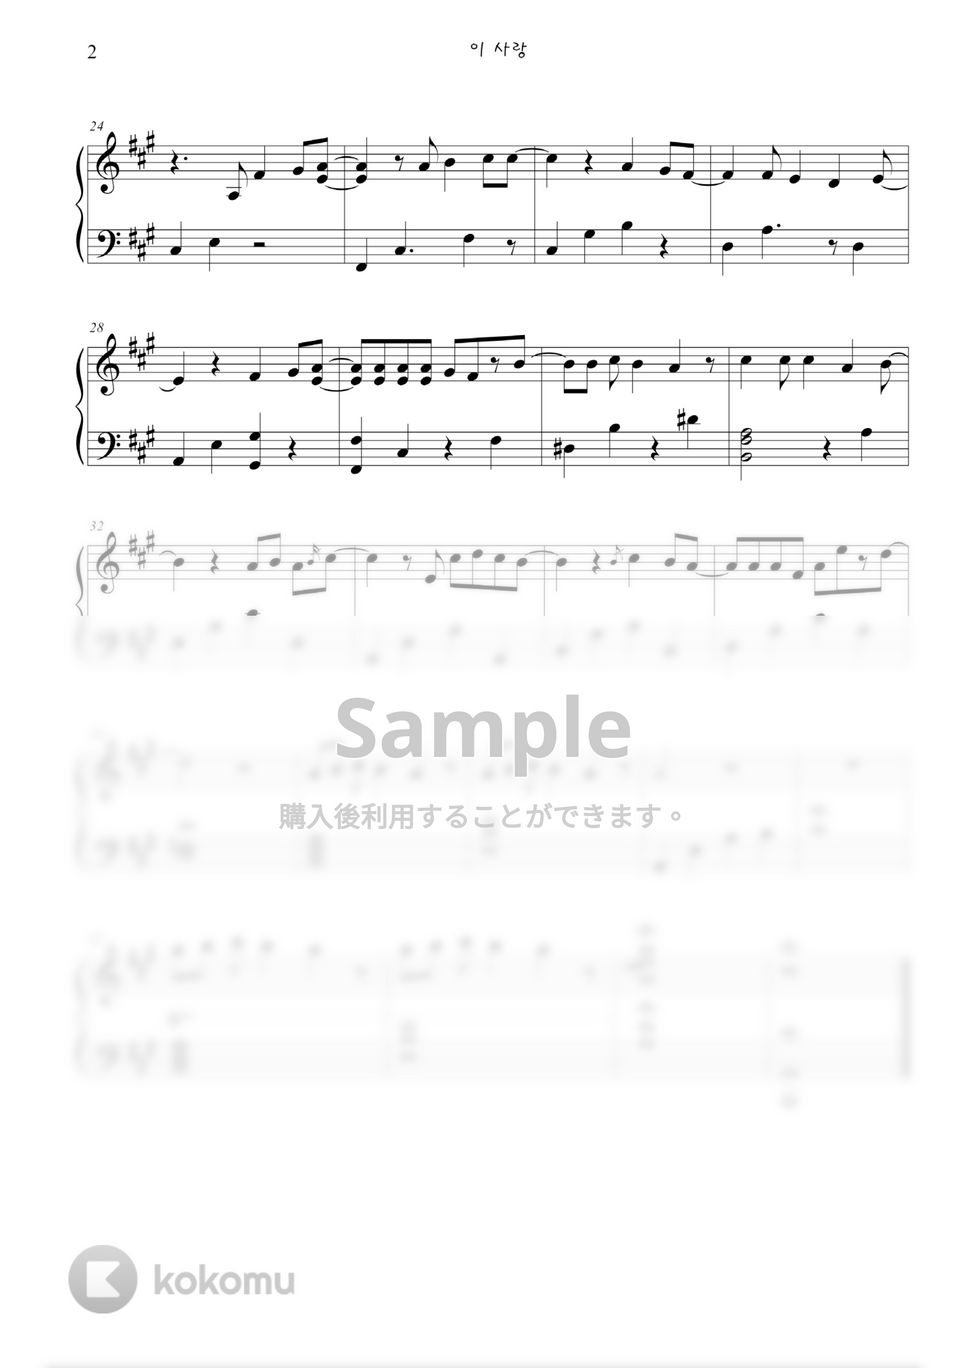 Davichi - この愛 (太陽の末裔) by JayM